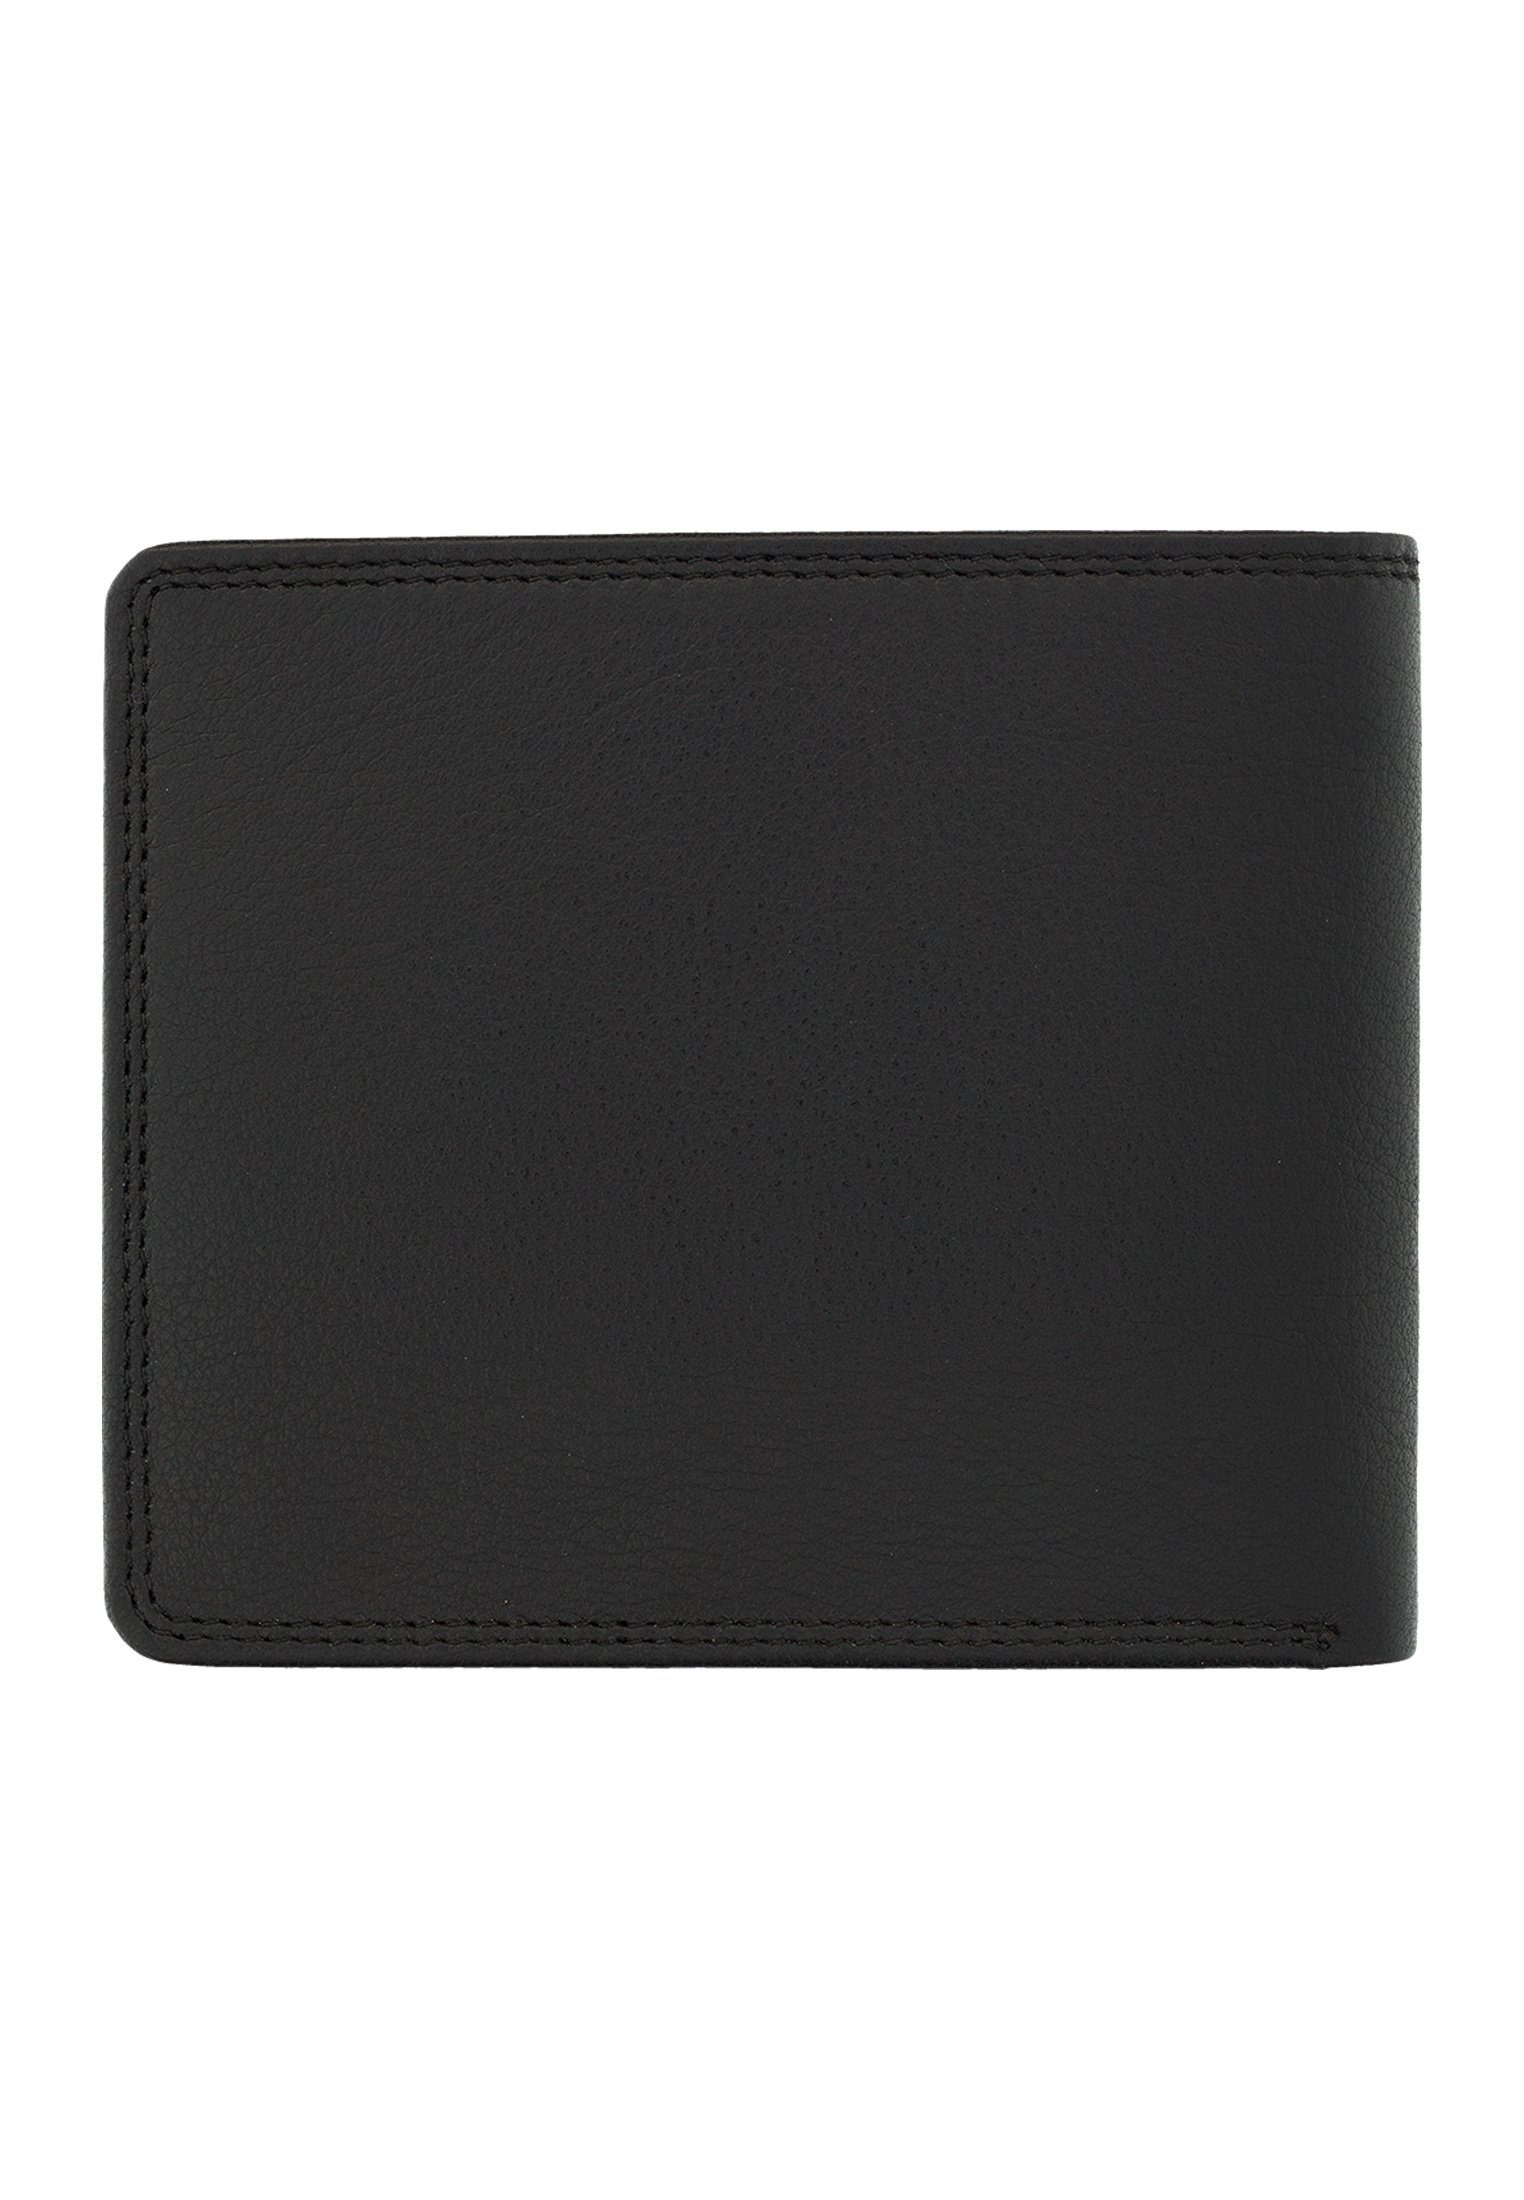 Braun Büffel Geldbörse GOLF 2.0 mit schmalem 8 in Kartenbörse Kartenfächern schwarz, 8CS Format